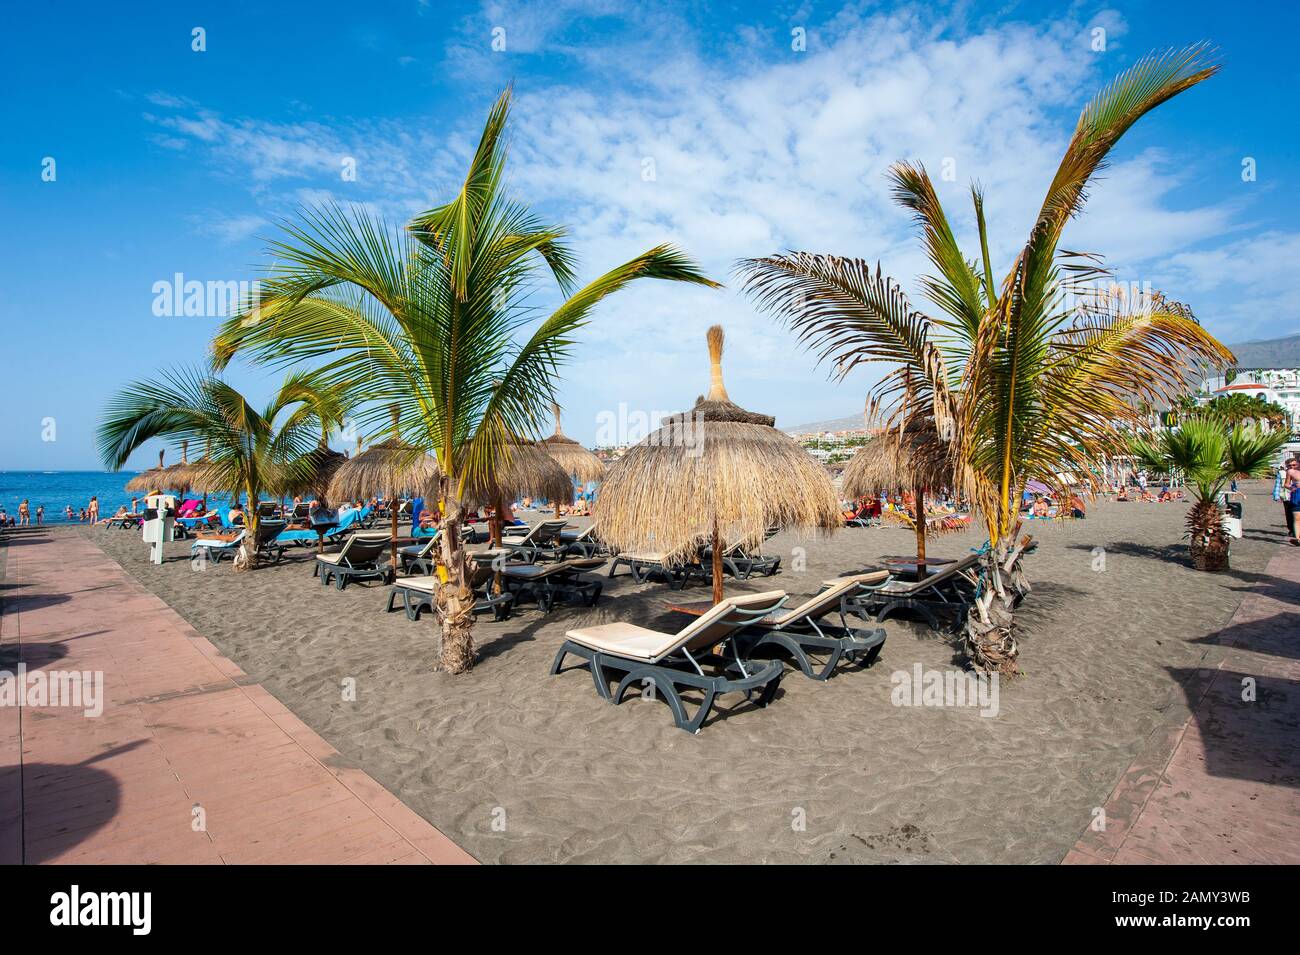 ISLAS Canarias TENERIFE, ESPAÑA - 26 Dic, 2019: Los turistas están tumbados y relajándose entre palmeras y reposeras en la playa llamada playa de Torviscas. Foto de stock